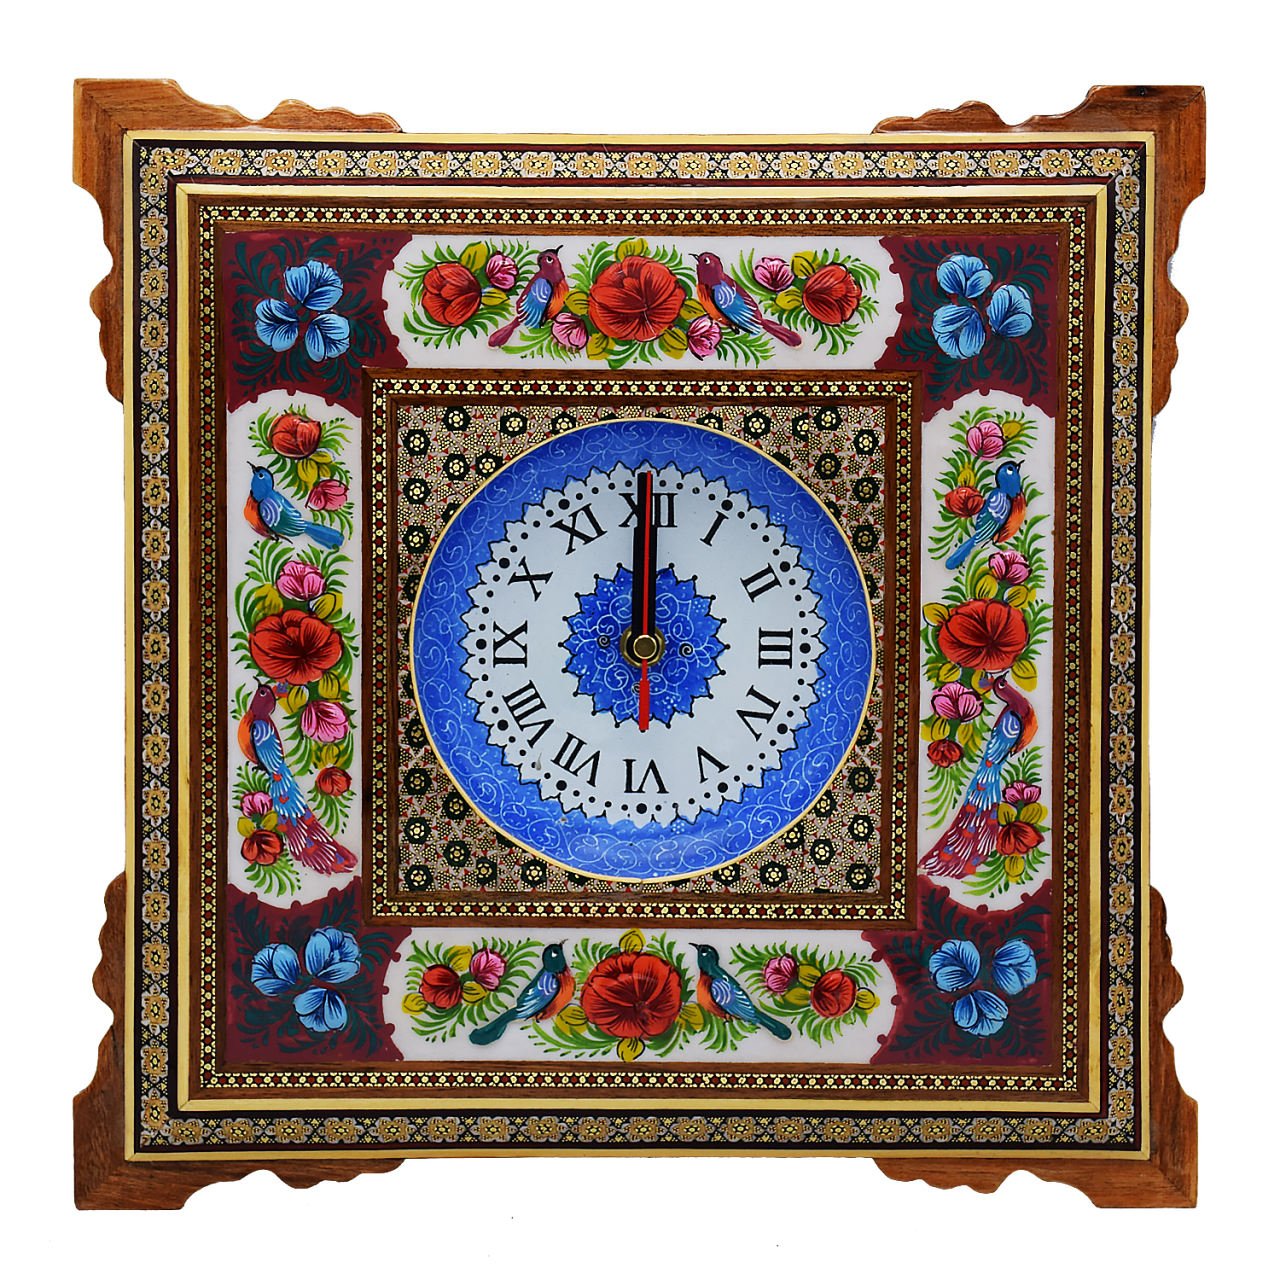 Khatam clock Code 461 , Khatam clock, Inlaid, Khatam clock model, Khatam